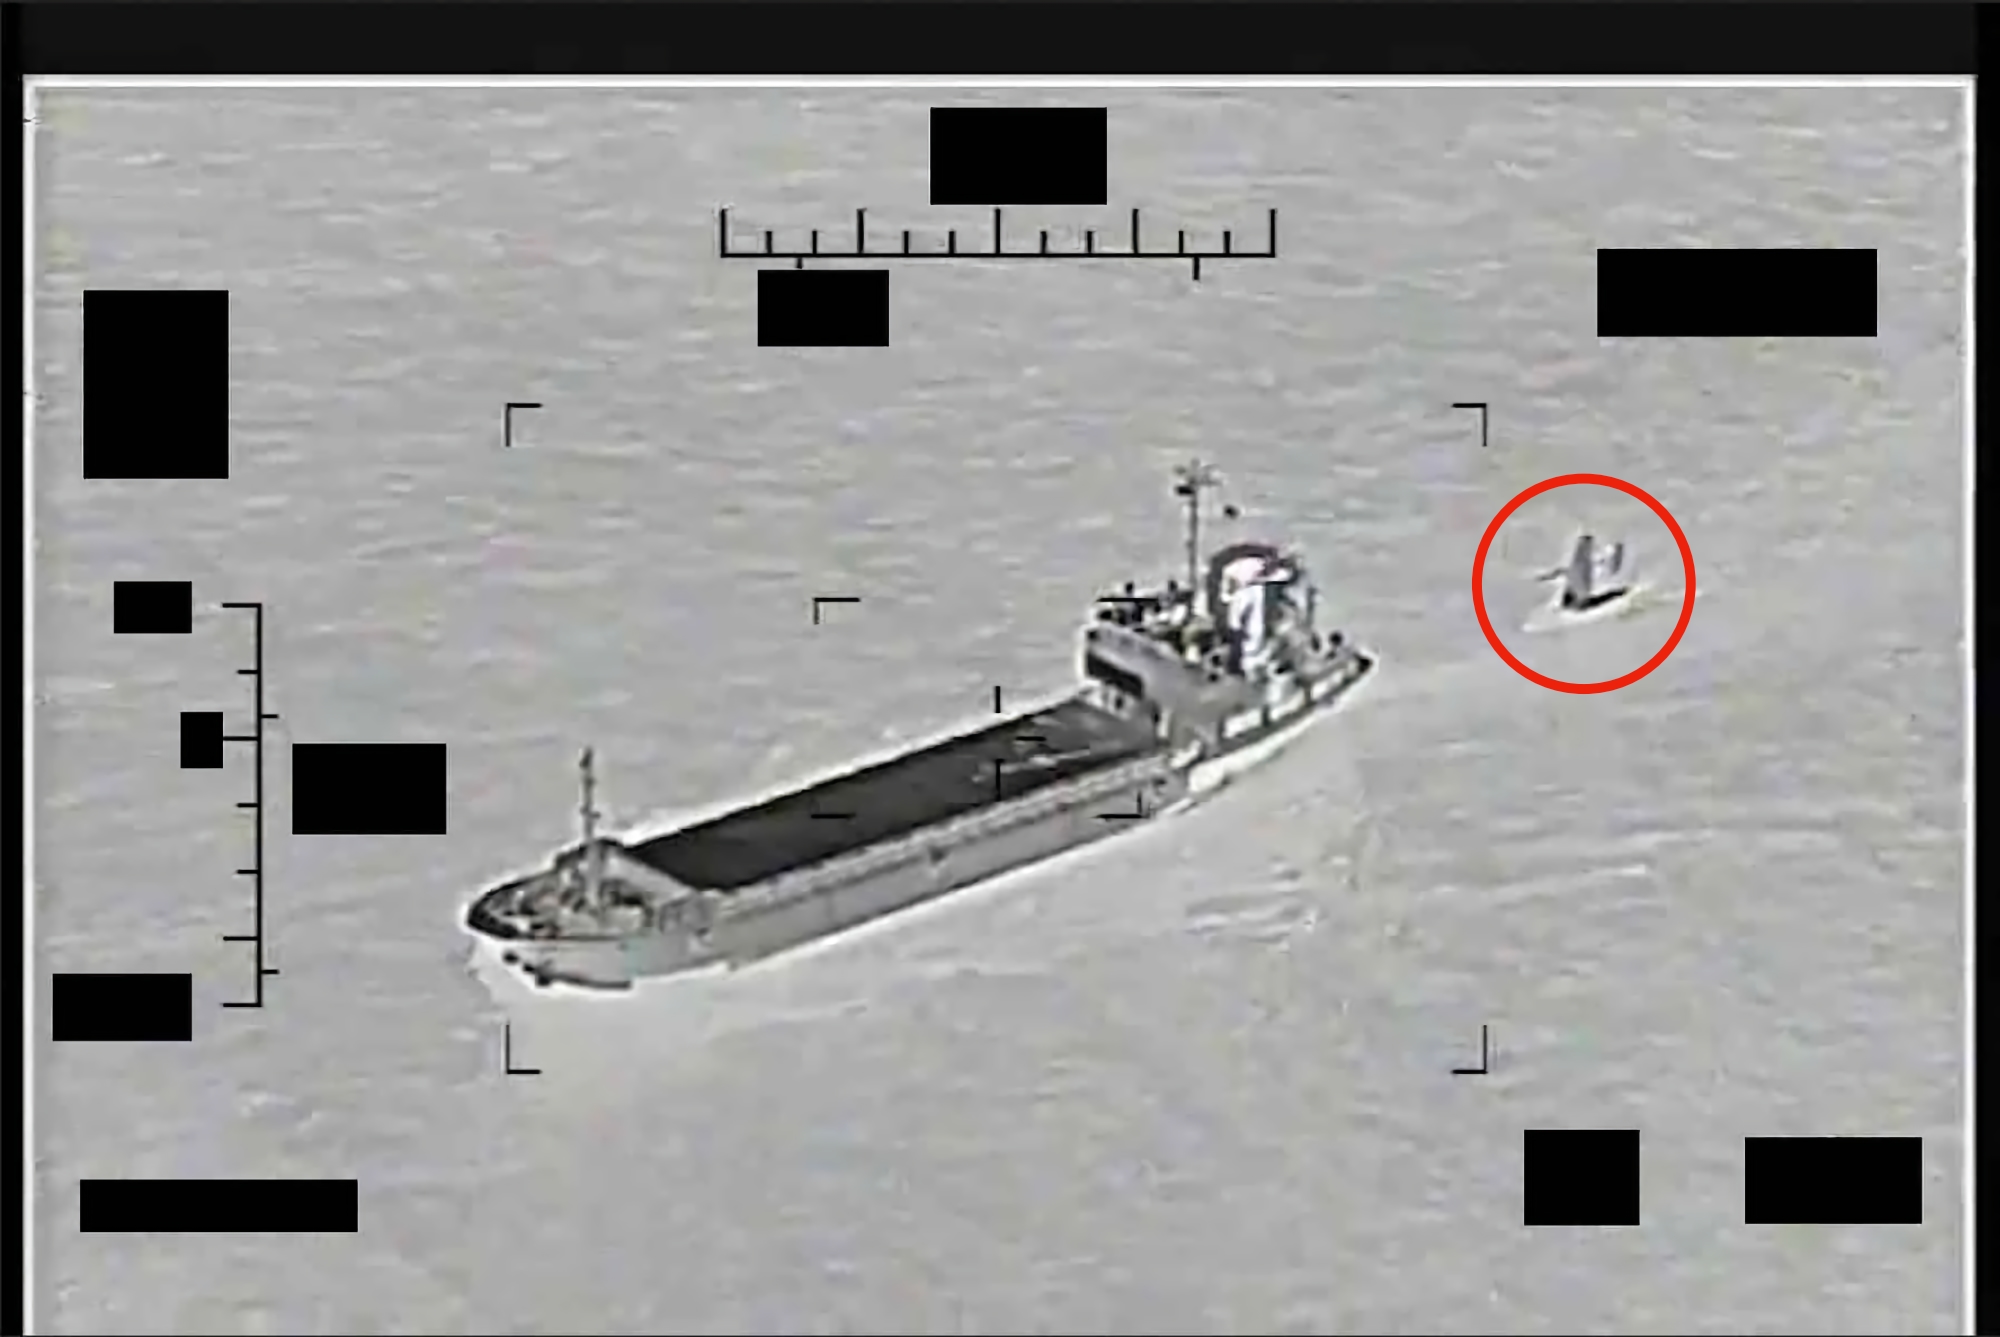 Der Iran hat versucht, ein unbemanntes US-Schiff namens Saildrone Explorer im Persischen Golf zu kapern, woraufhin das Patrouillenboot USS Thunderbolt und der Hubschrauber MH-60S Sea Hawk eingesetzt wurden.